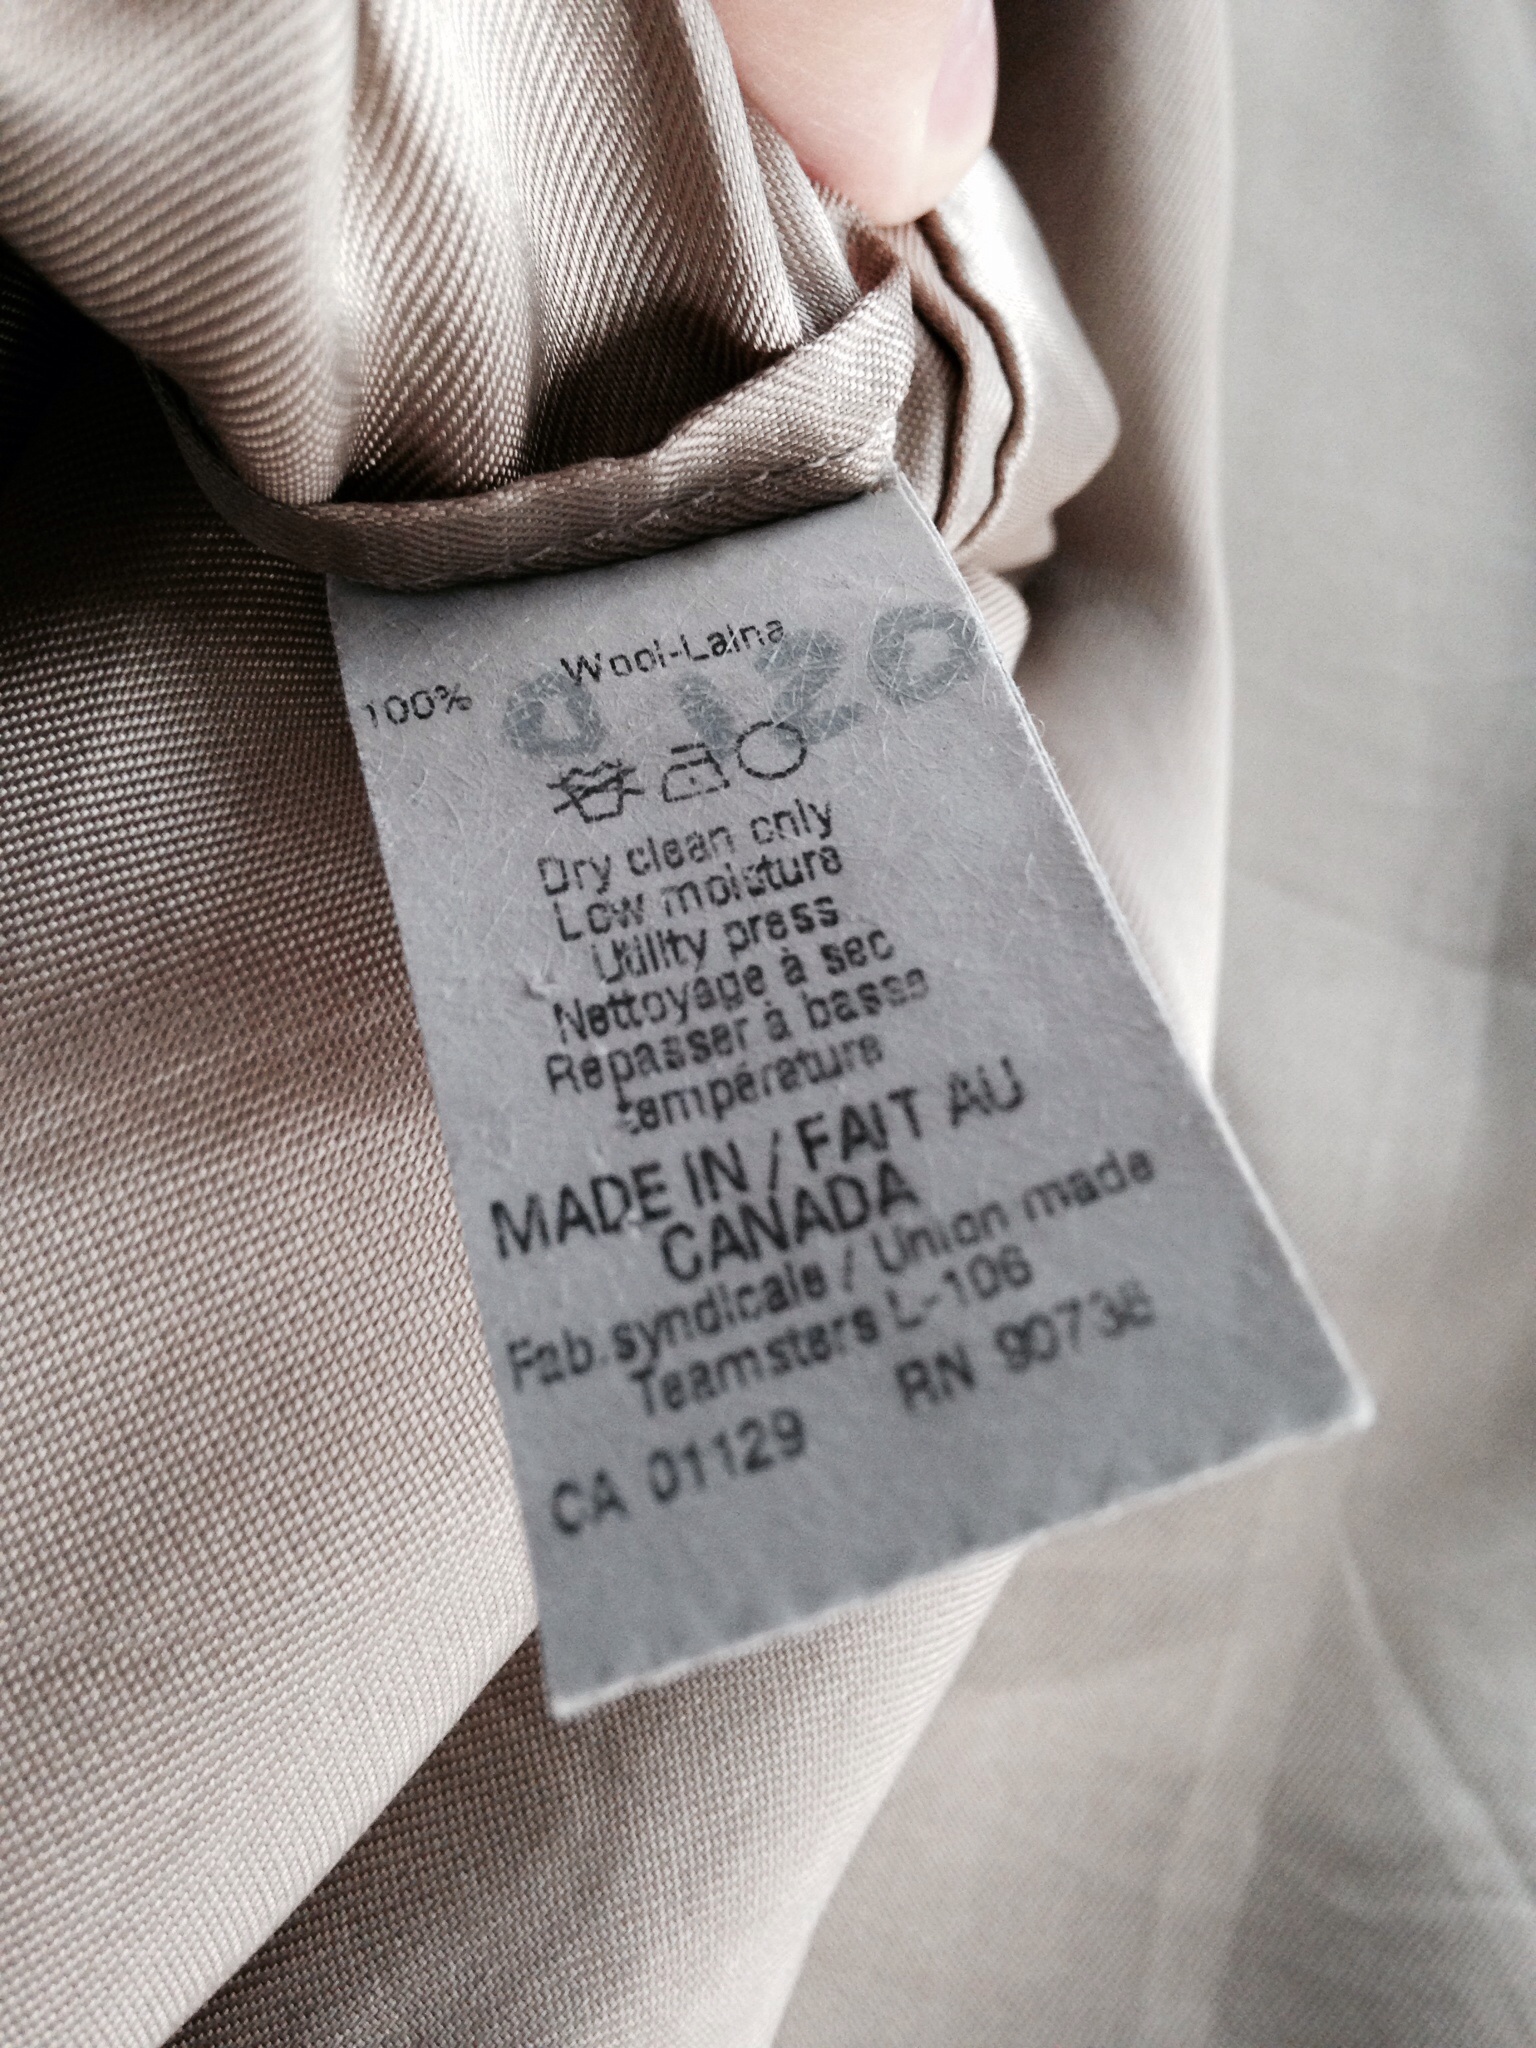 Lauren Ralph Lauren Green Label (Made in Canada) worth tailoring ...